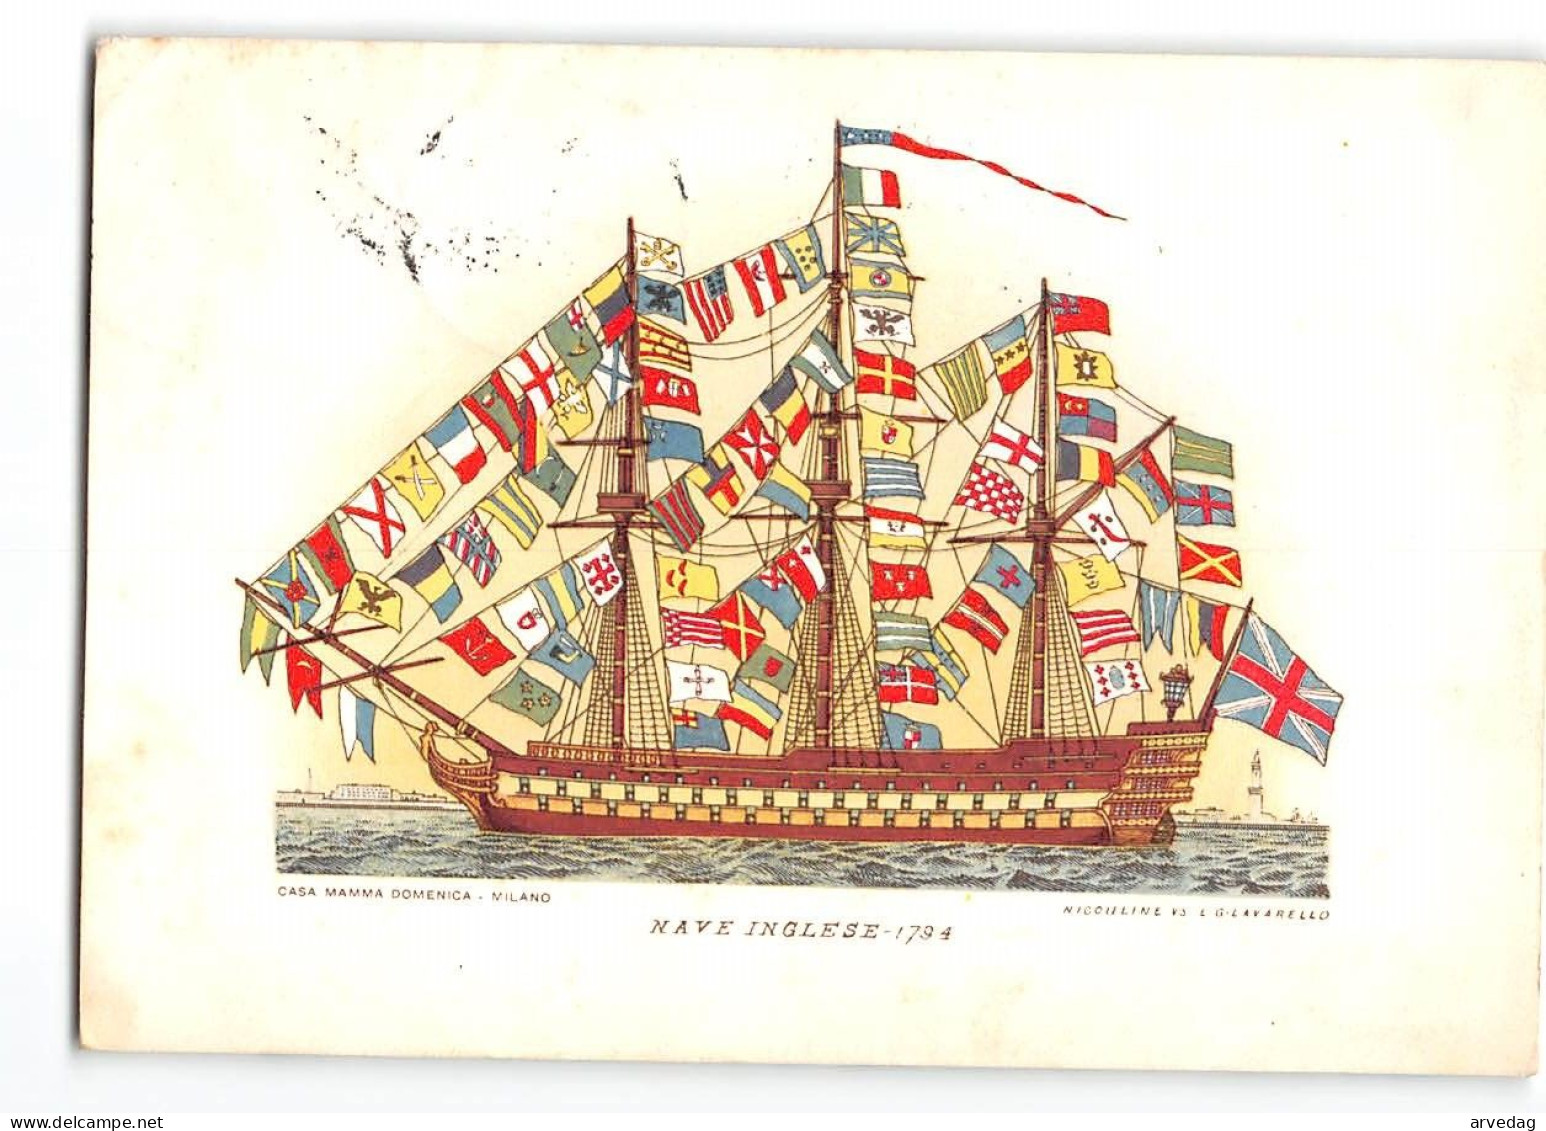 AG2691 NAVE INGLESE 1794 - STORIA DELLA NAVE SERIE 3 - CASA MAMMA DOMENICA MILANO - NICOULINE E G LAVARELLO - Sailing Vessels